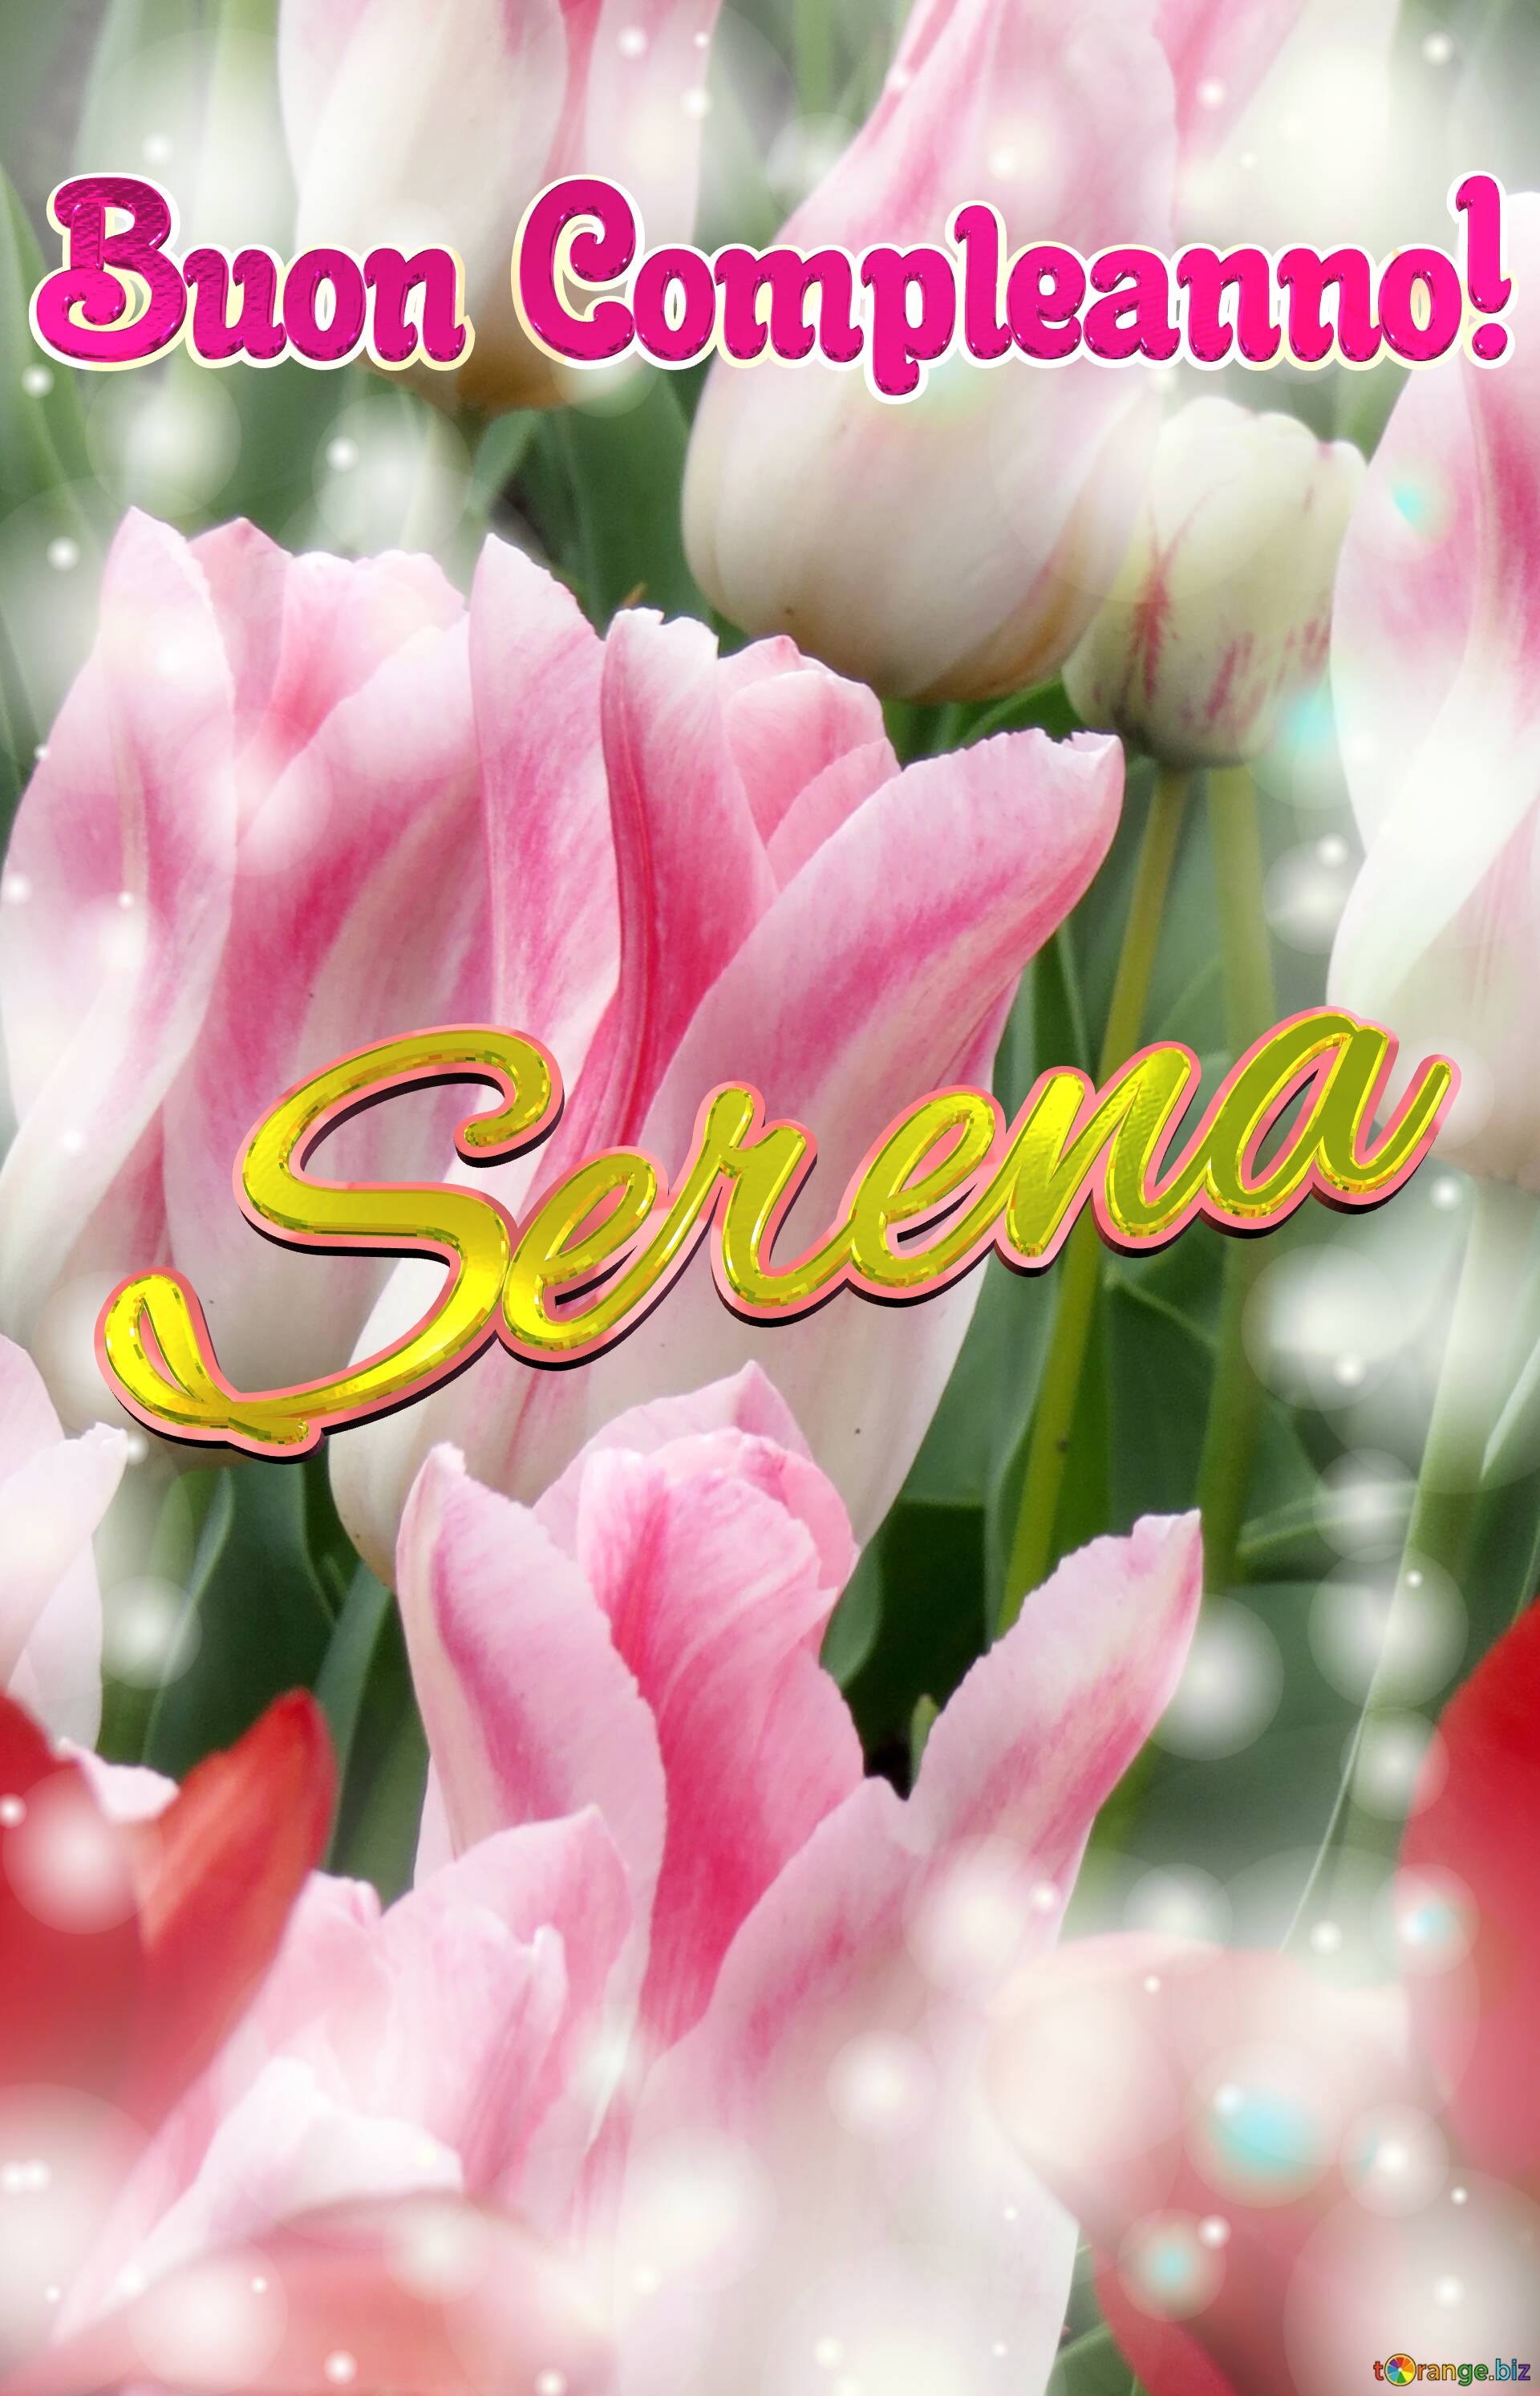 Buon Compleanno! Serena  La bellezza dei tulipani è un richiamo alla purezza della vita, auguri per una vita pura e bella. №0